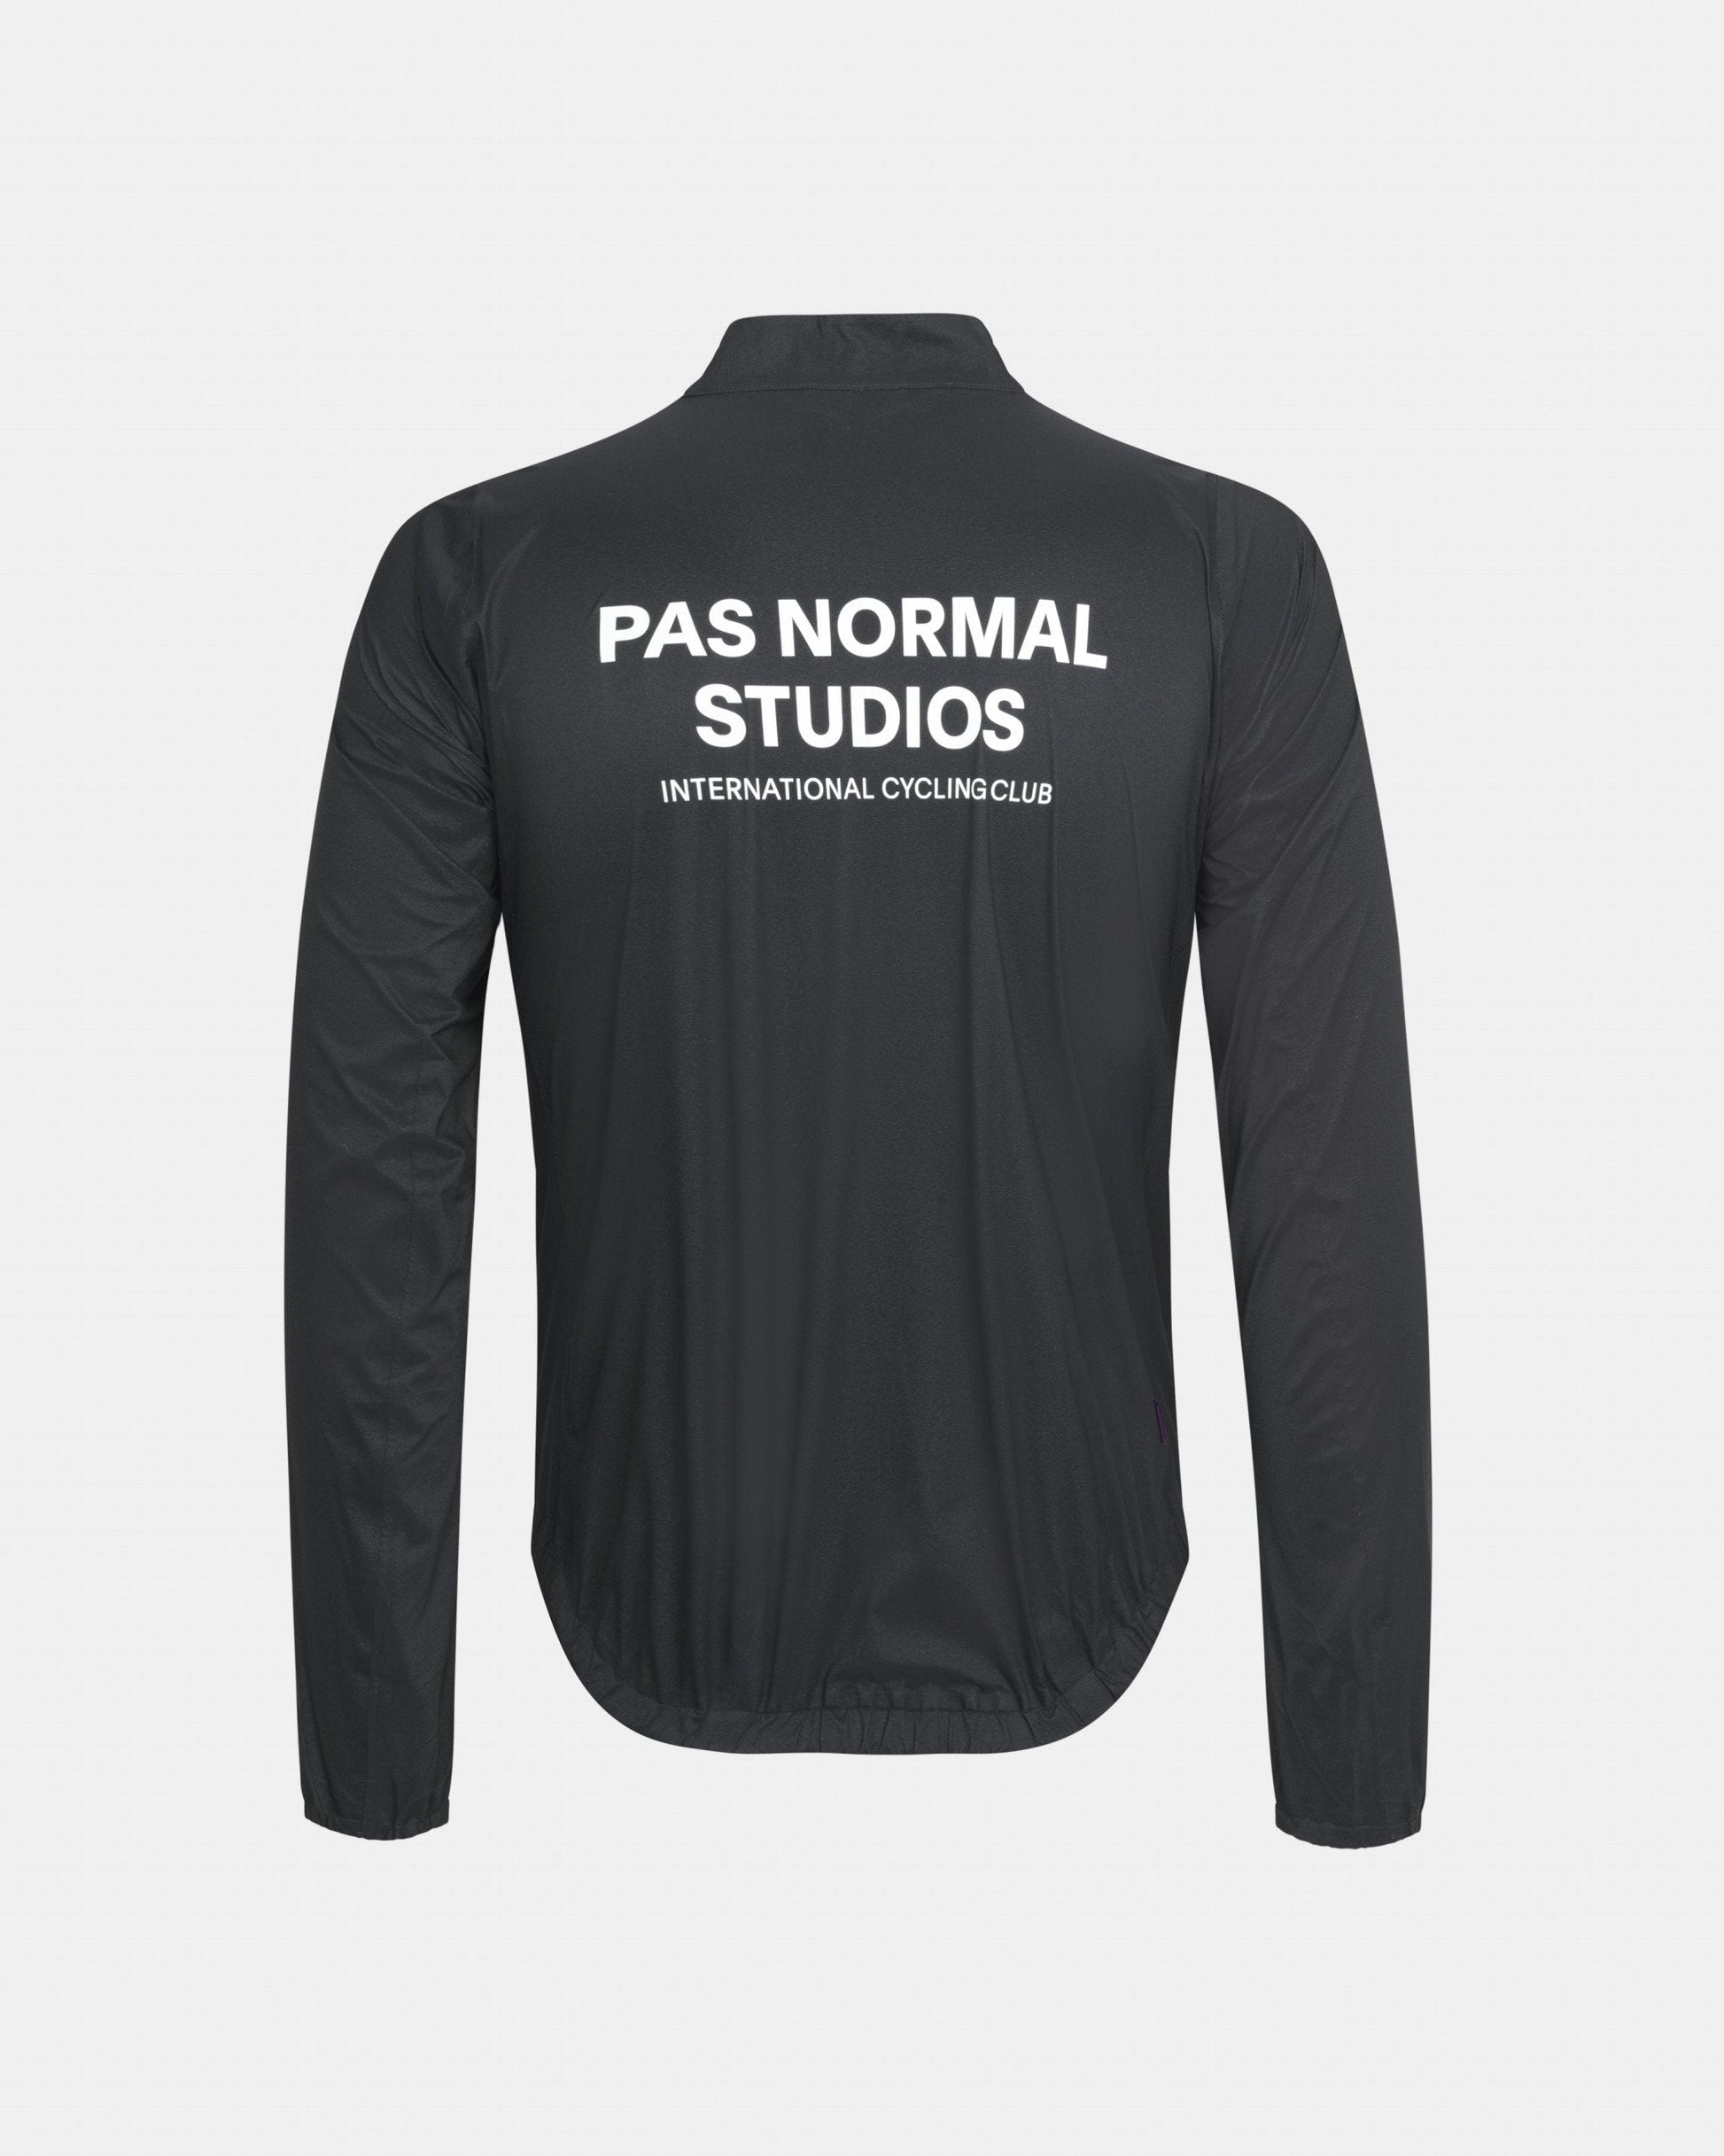 Pas Normal Studios - Manteau de Pluie Mechanism Manteaux Pas Normal Studios 